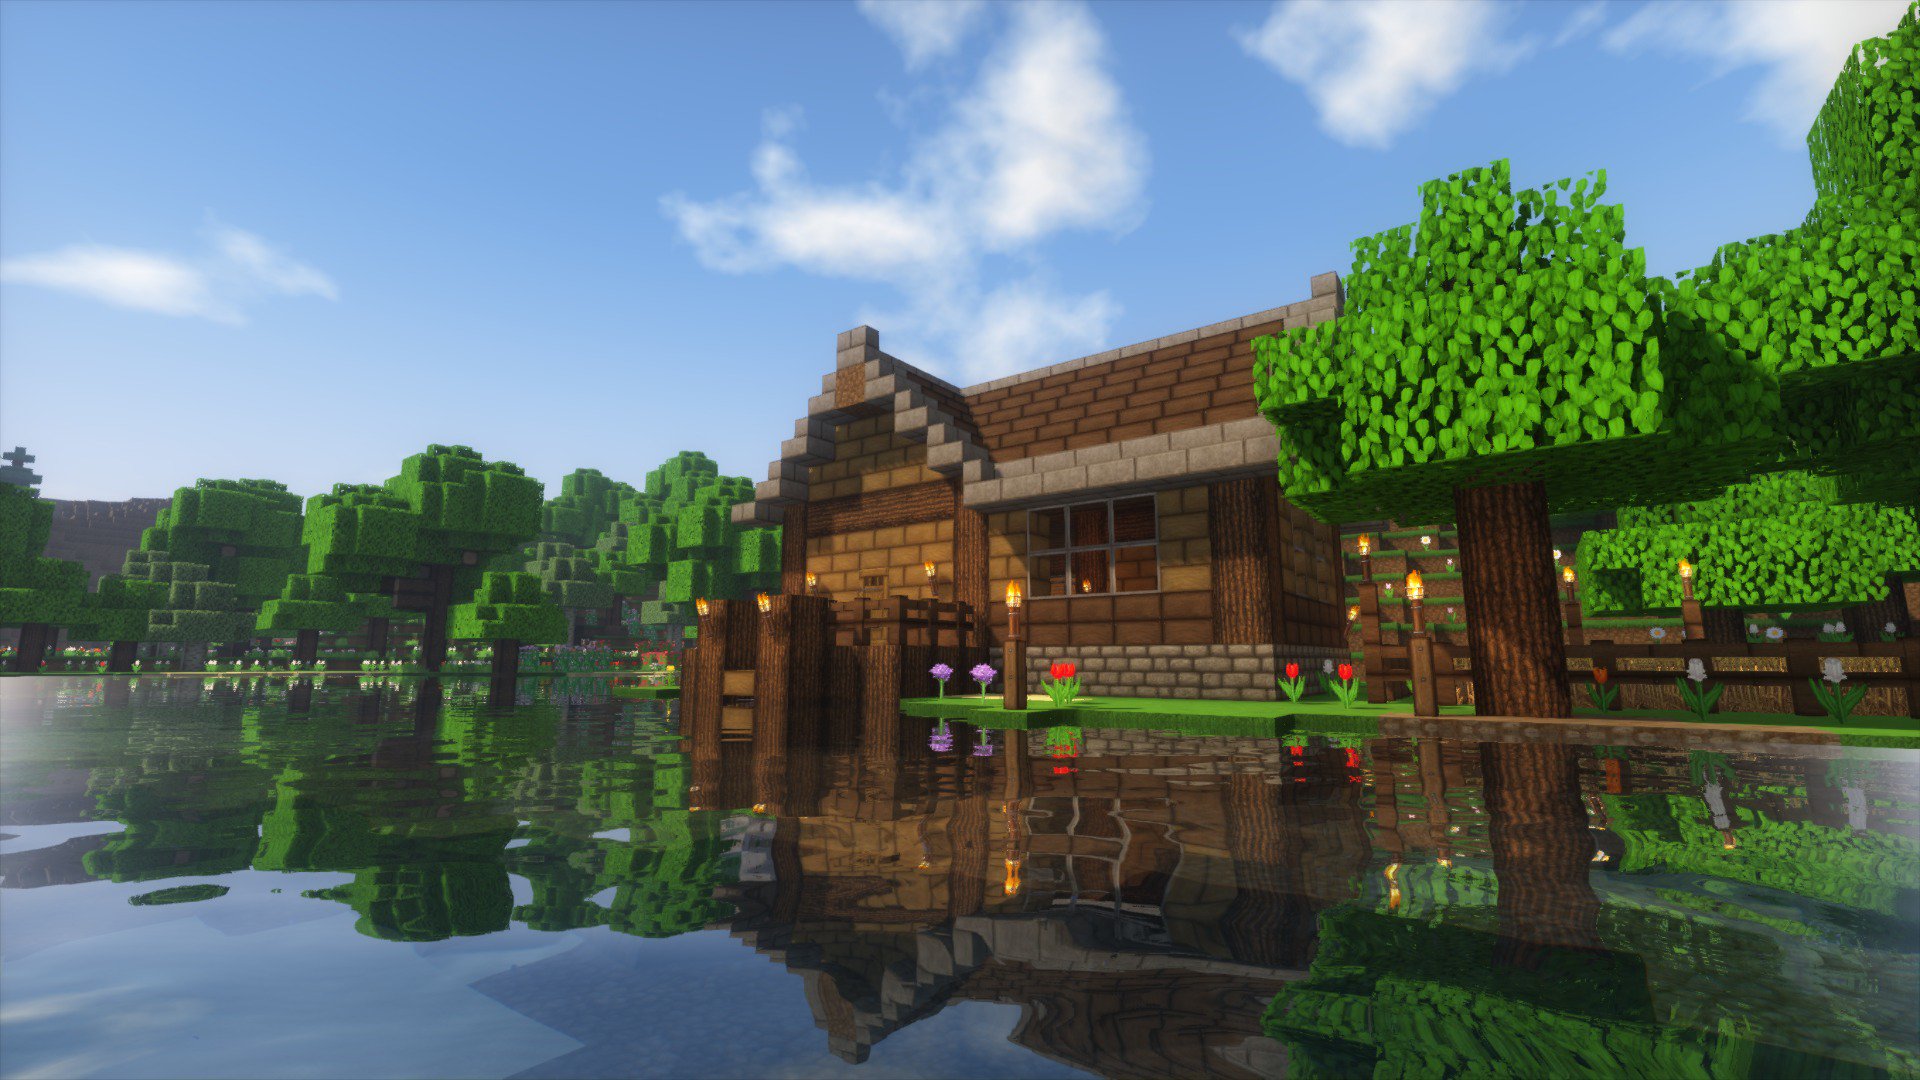 ピピ Fo4の元建築士 湖の畔に自宅が完成した 水面に映る家がイイ感じだなぁ 夜は幻想的 Minecraft マインクラフト T Co G77f6ndkkp Twitter